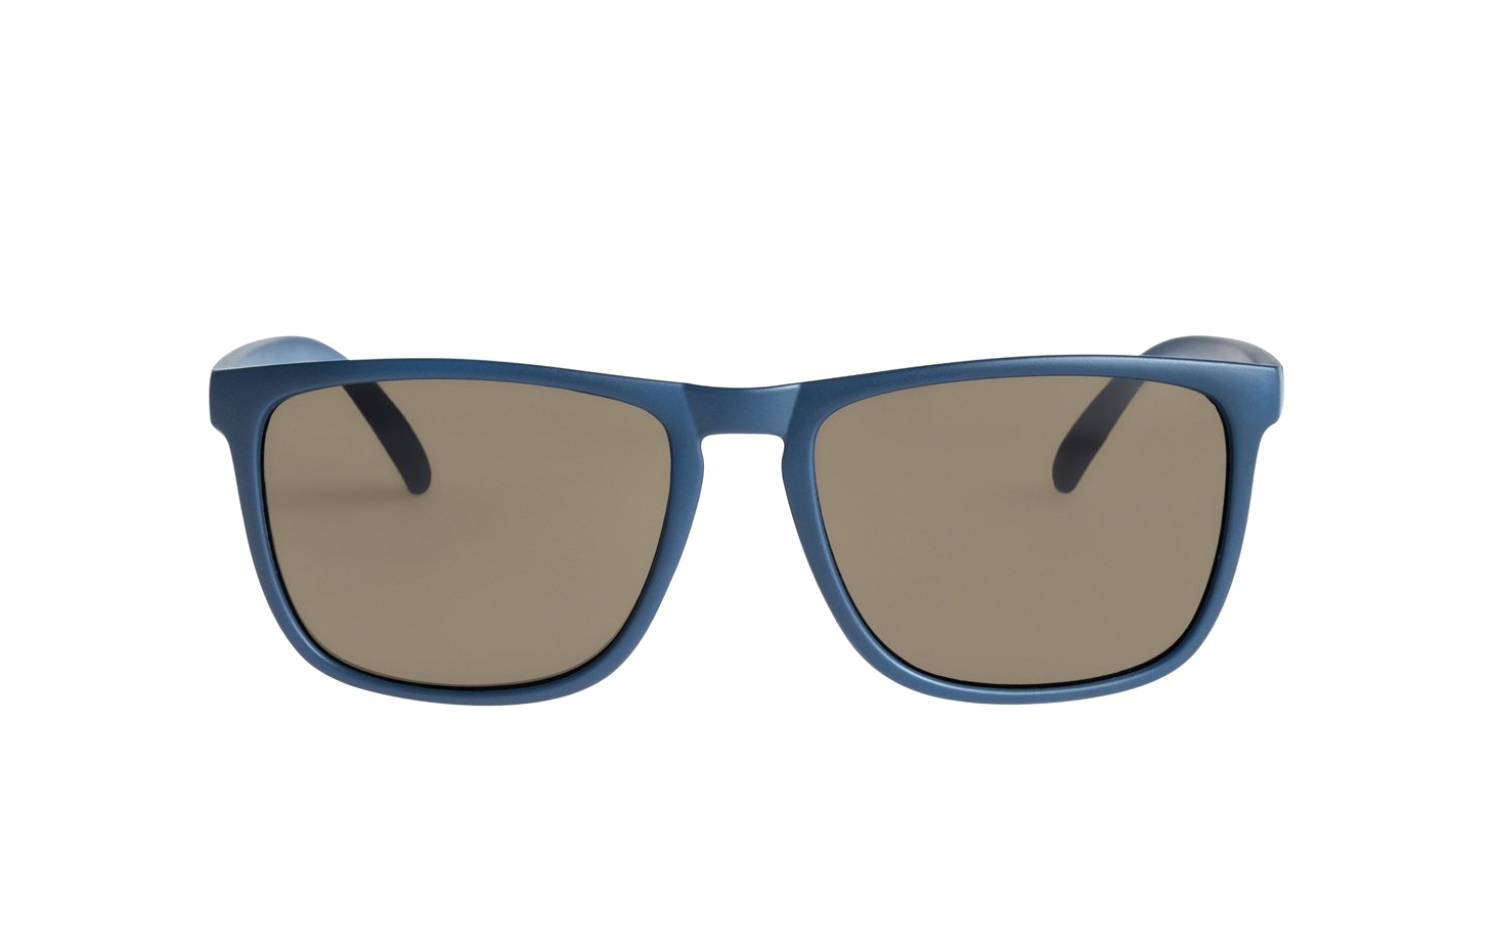 DC Shades Sunglasses, Dark Indigo női napszemüveg eladó, ár | Garage Store  Webshop